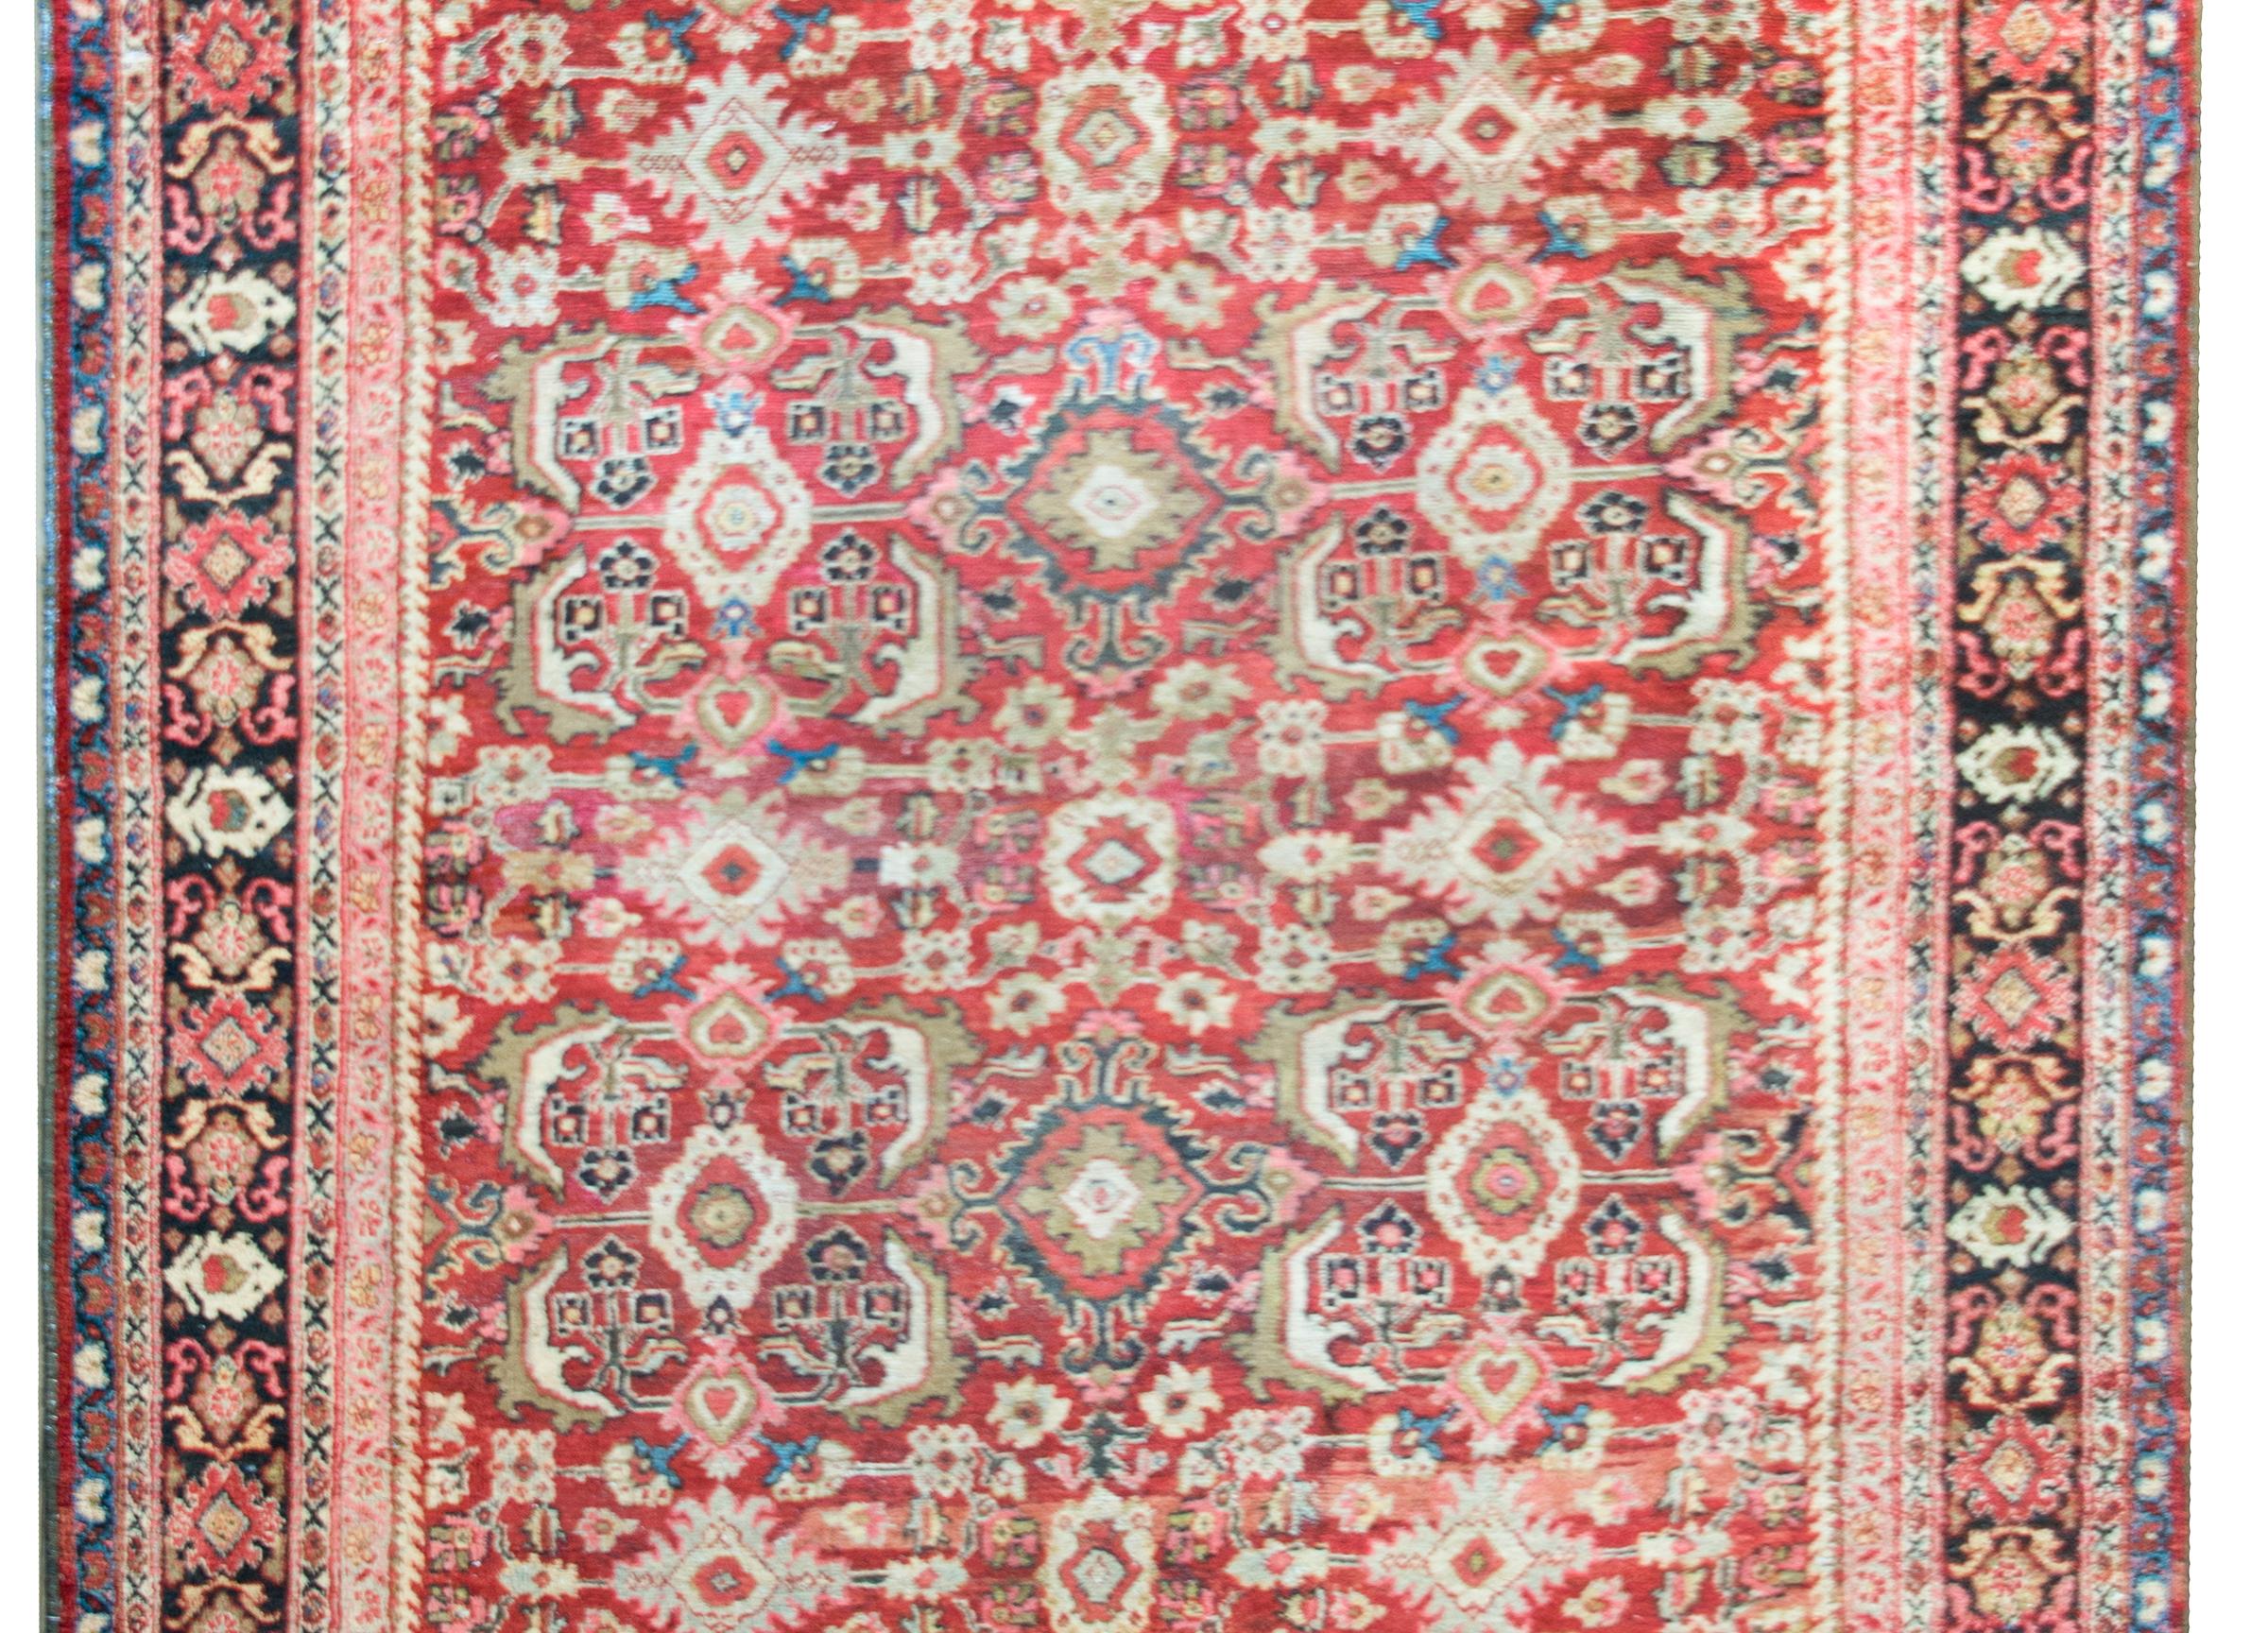 Superbe tapis persan Meshkabad du début du 20e siècle, avec un motif floral couvrant une myriade de fleurs à grande échelle, de feuilles et de vignes enroulées, le tout entouré de plusieurs rayures à motifs floraux.